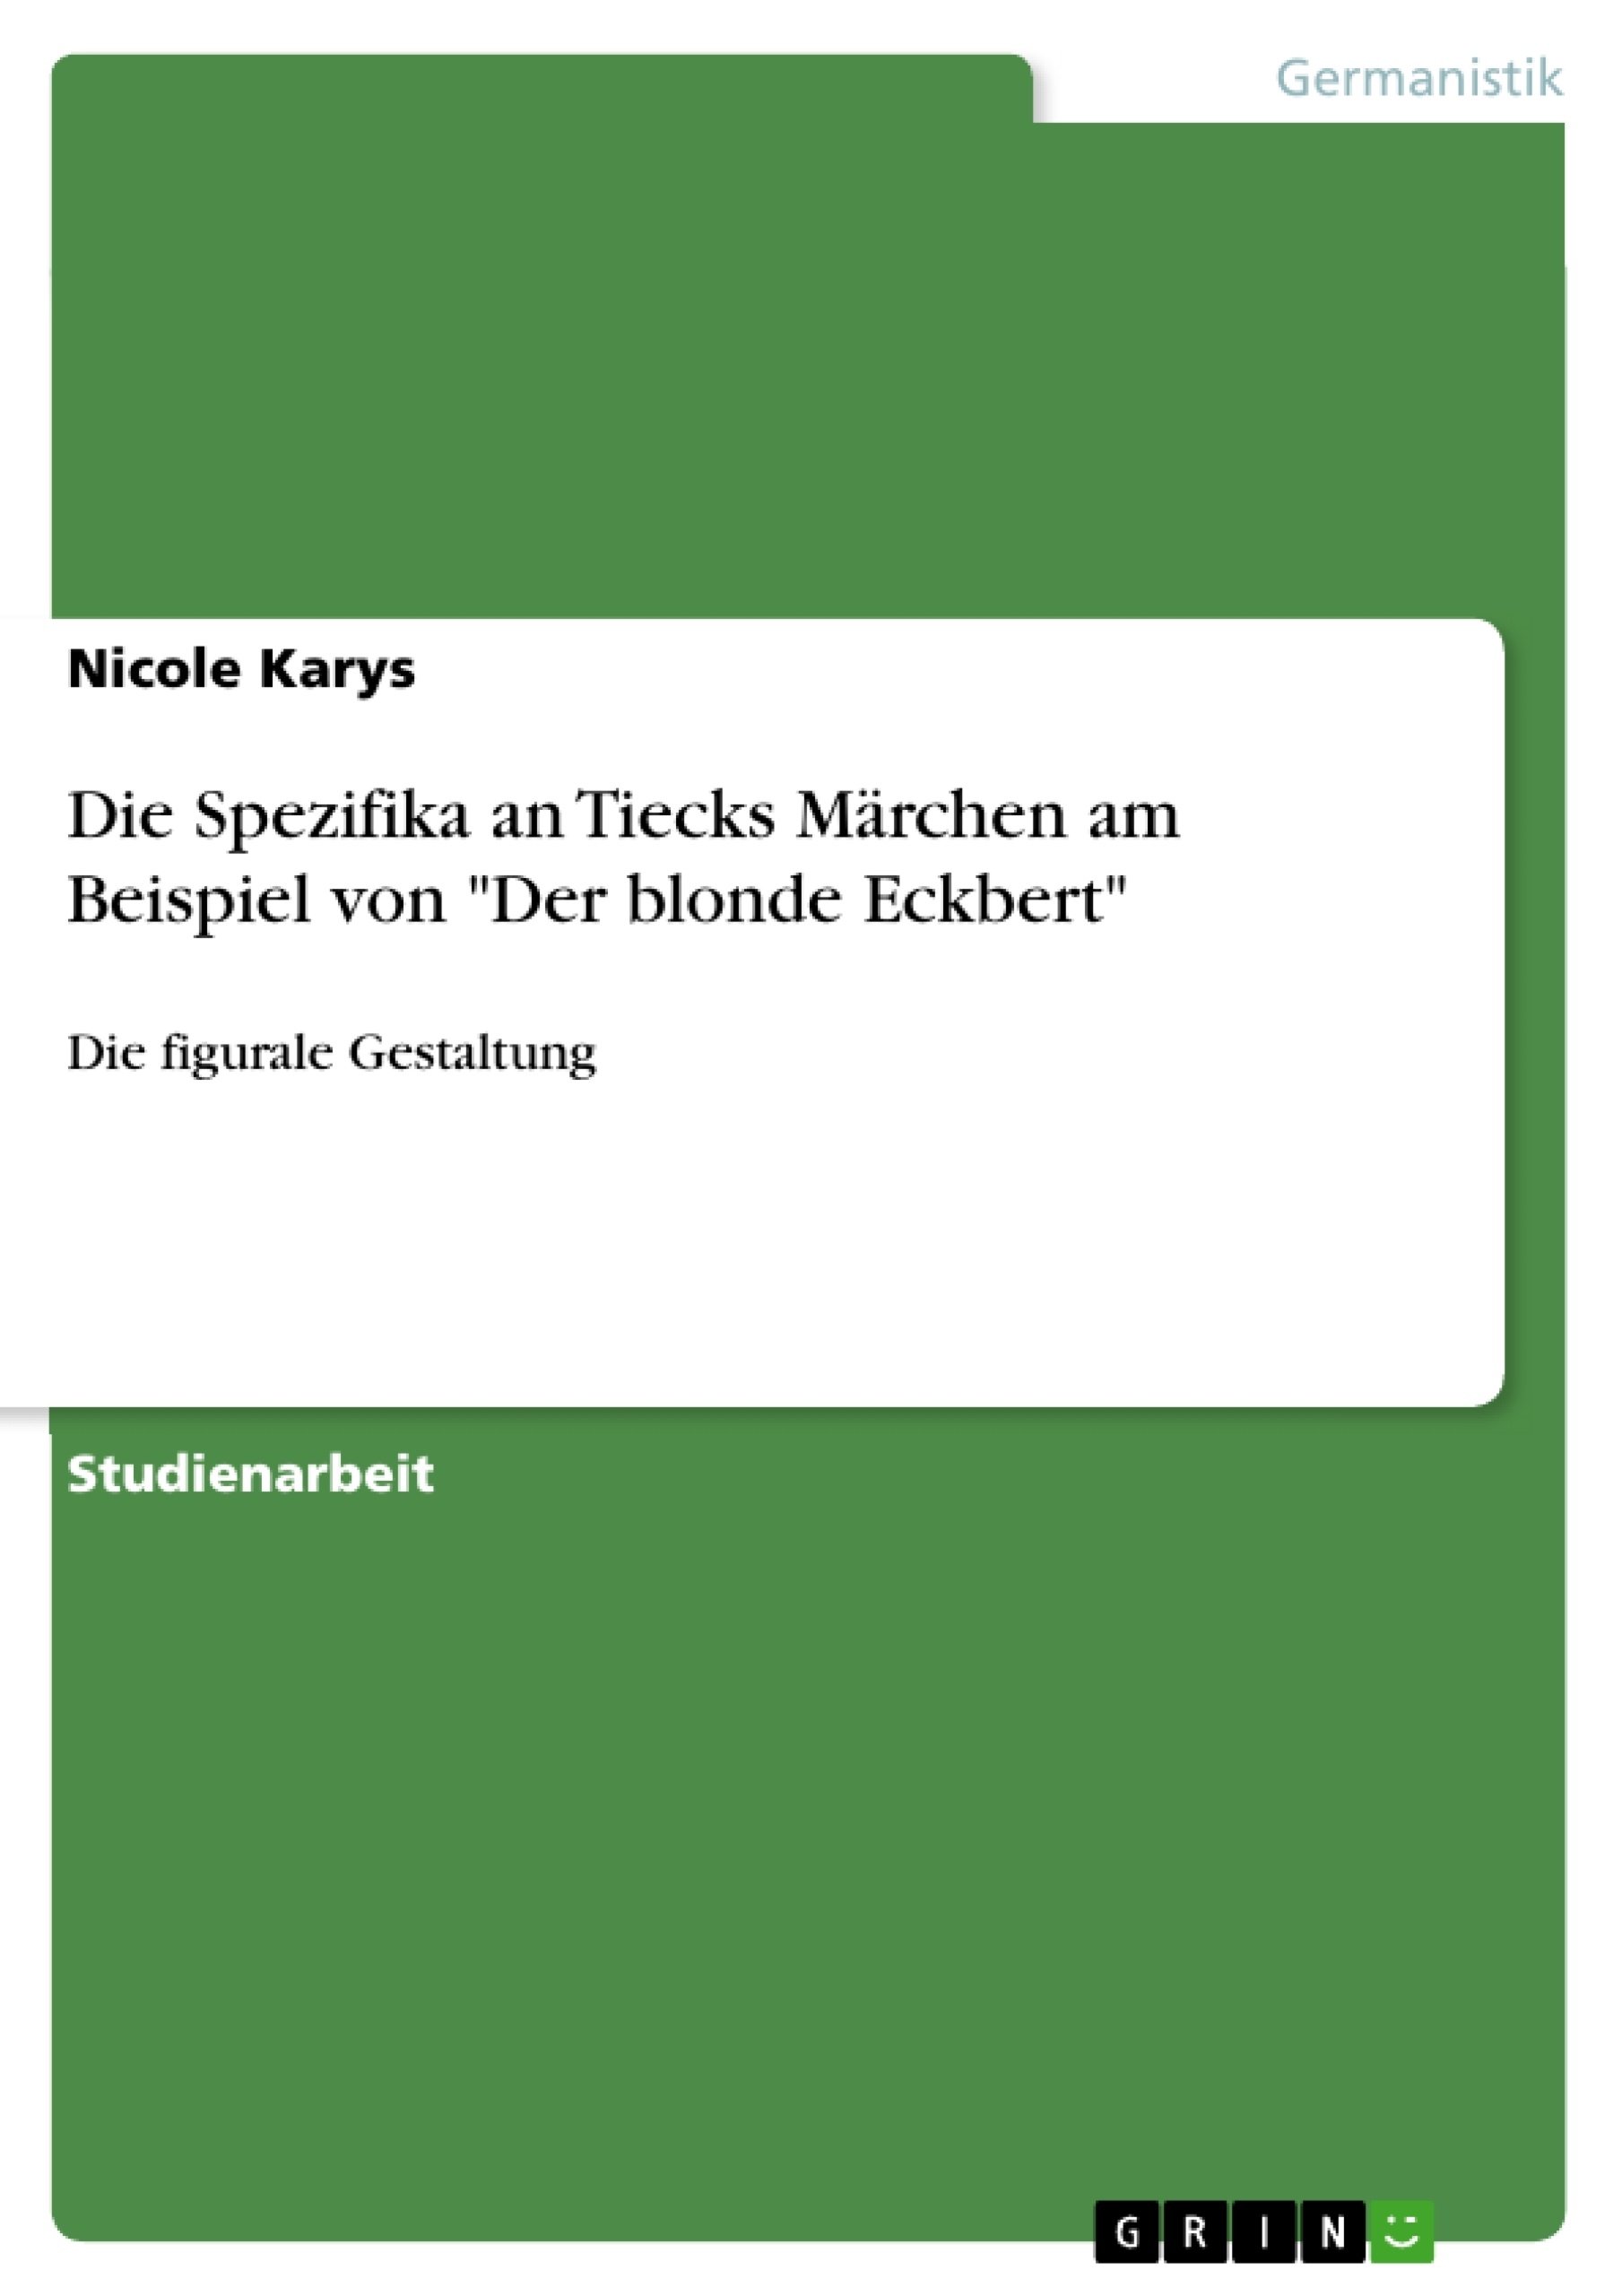 Título: Die Spezifika an Tiecks Märchen am Beispiel von "Der blonde Eckbert"